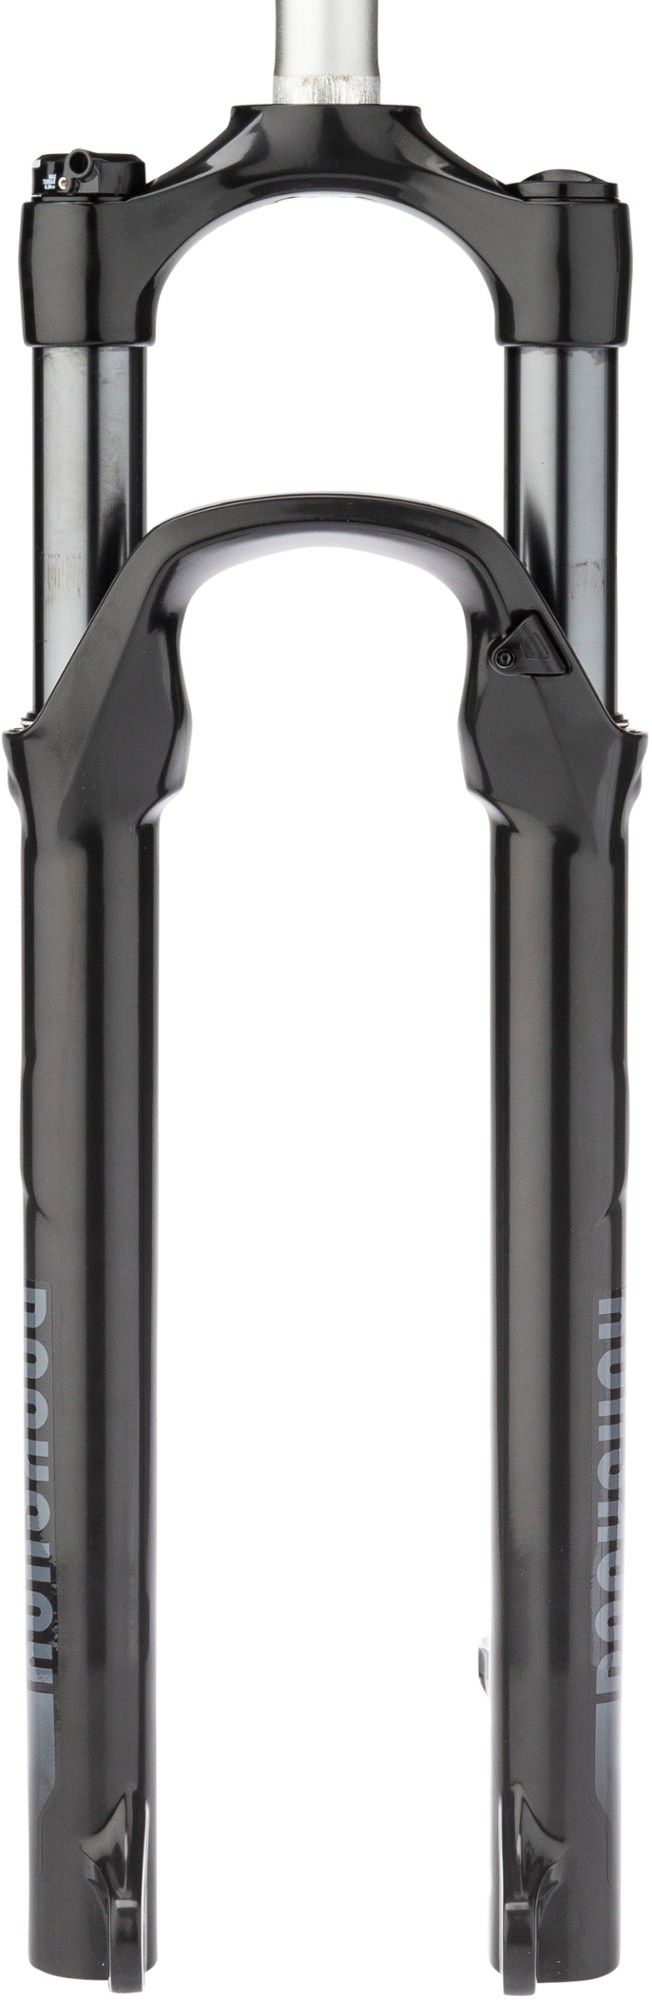 Амортизационная вилка Recon Silver RL с пультом дистанционного управления OneLoc RockShox, черный